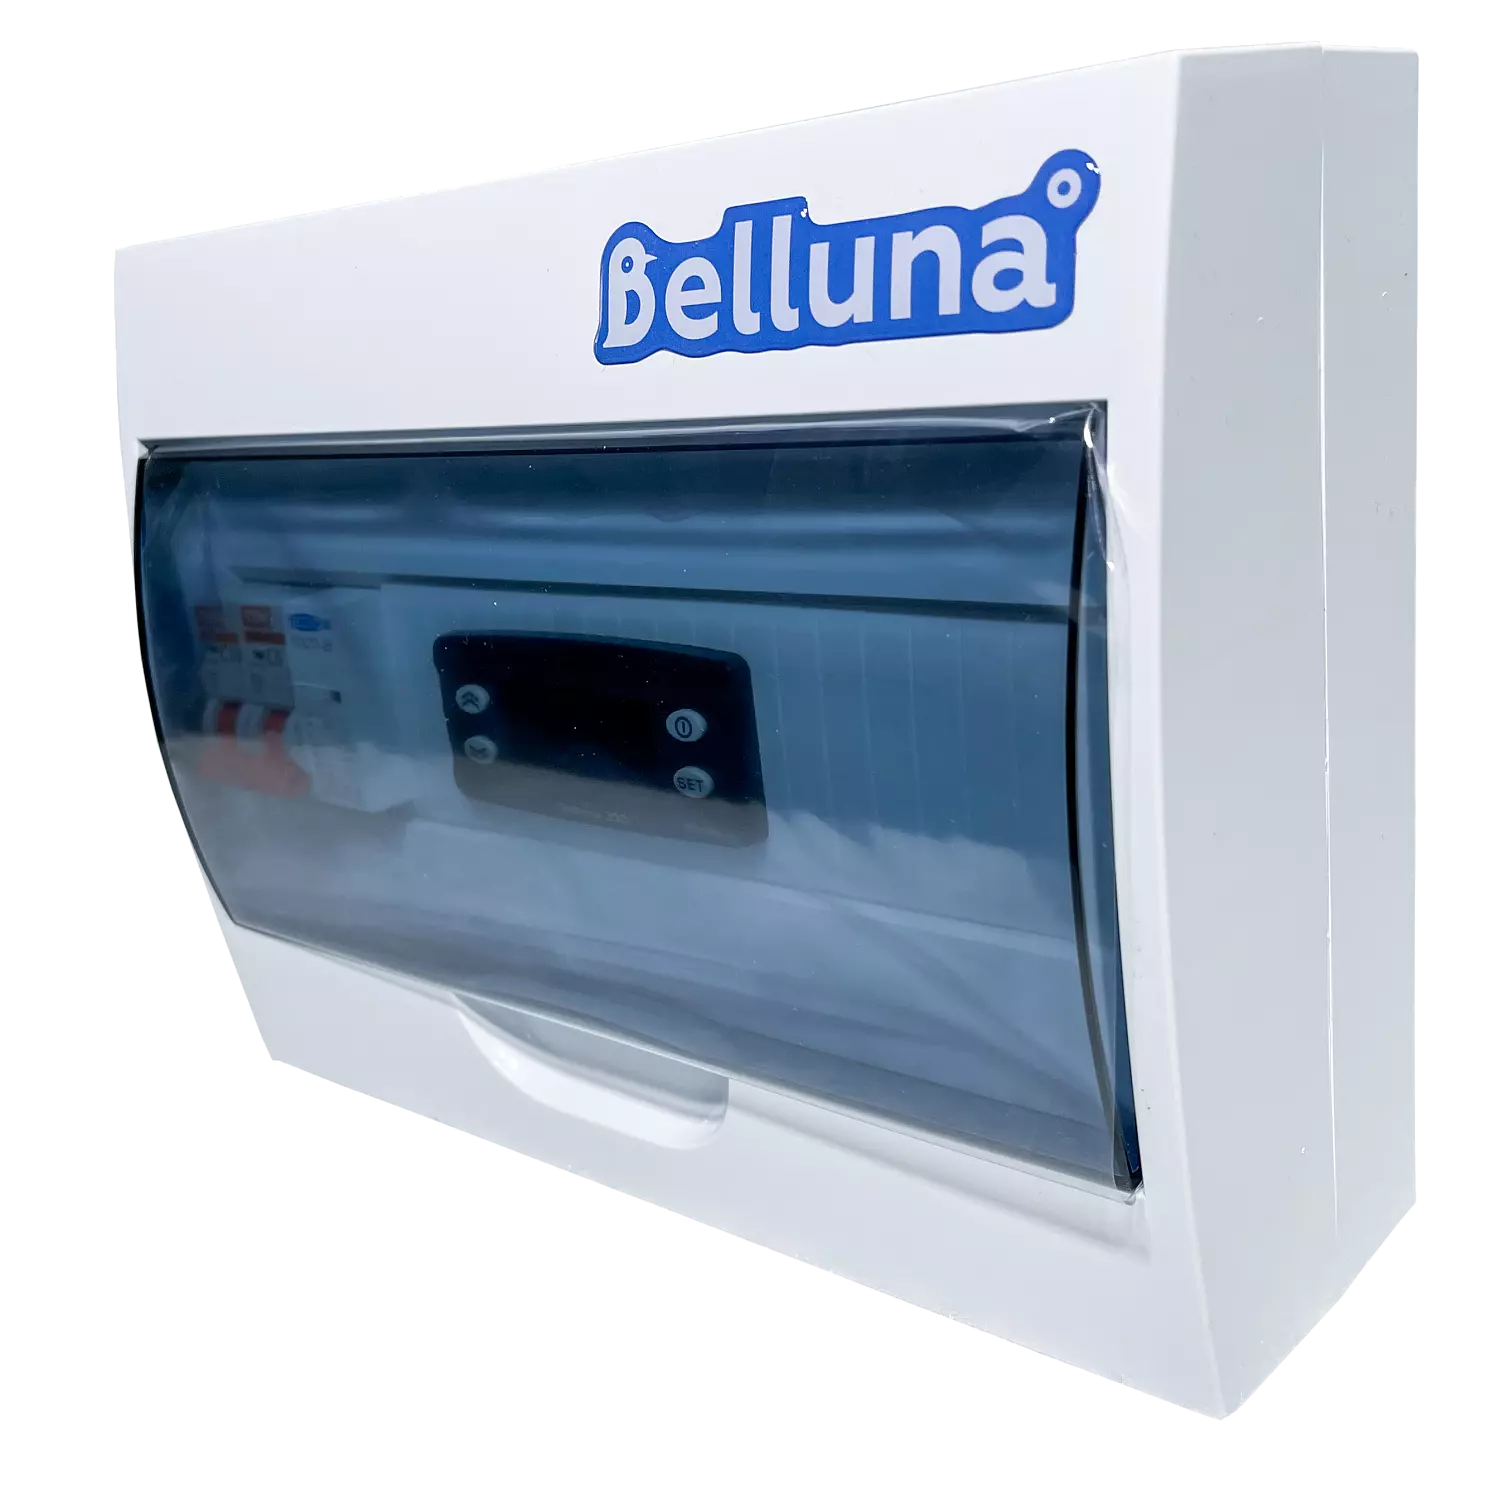 сплит-система Belluna S342 Екатеринбург